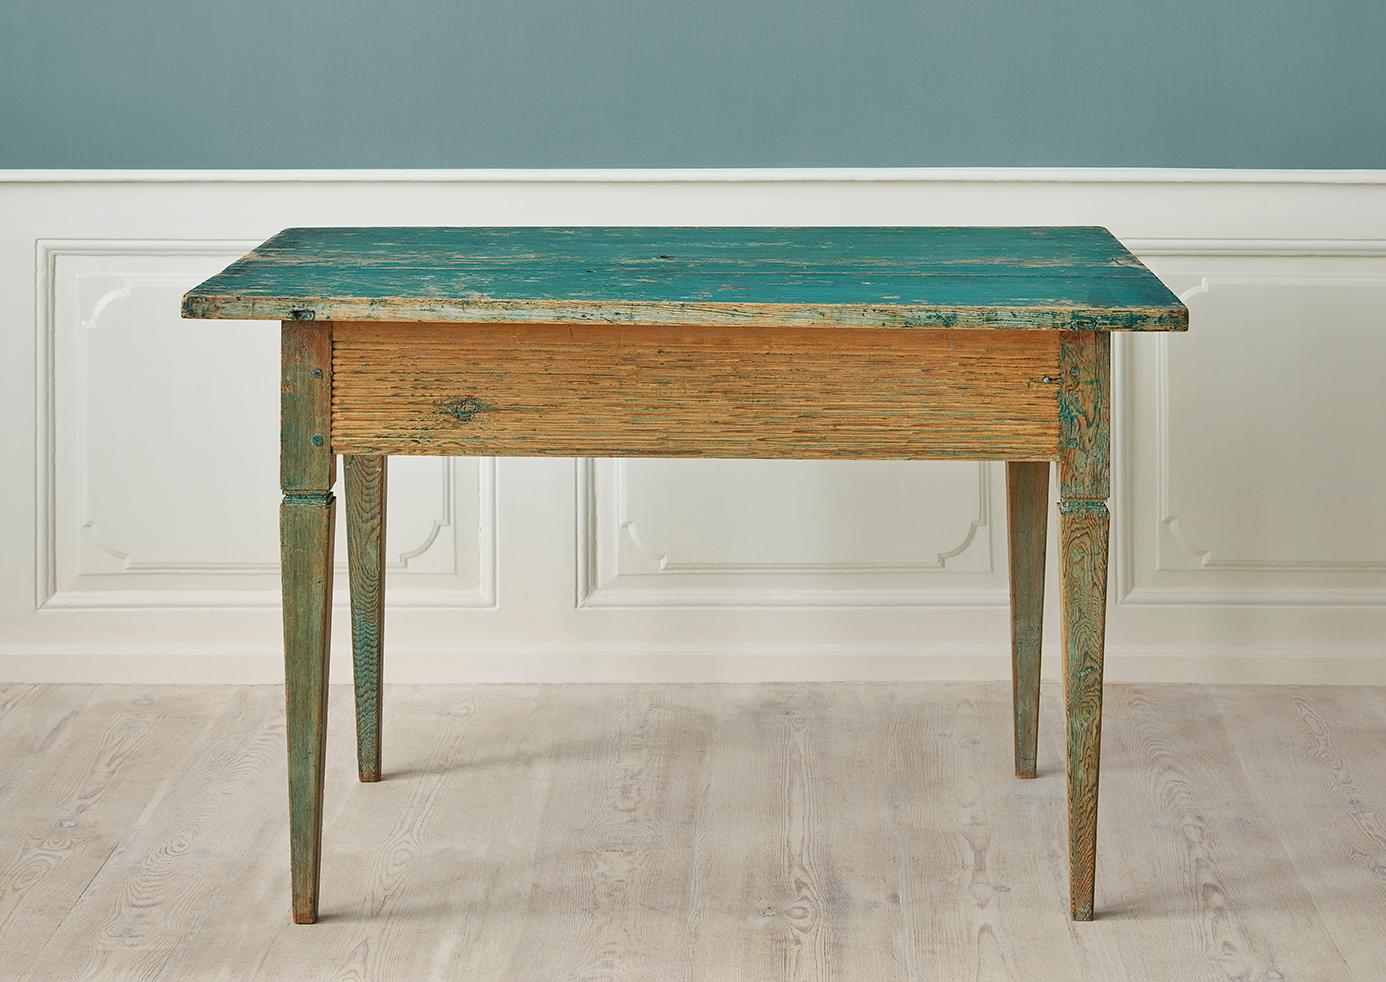 Schweden, Ende 18. Jahrhundert

Antiker original schwedischer Tisch aus der Zeit um 1790. In Grün gestrichen. 

H 77 x B 117 x T 81 cm